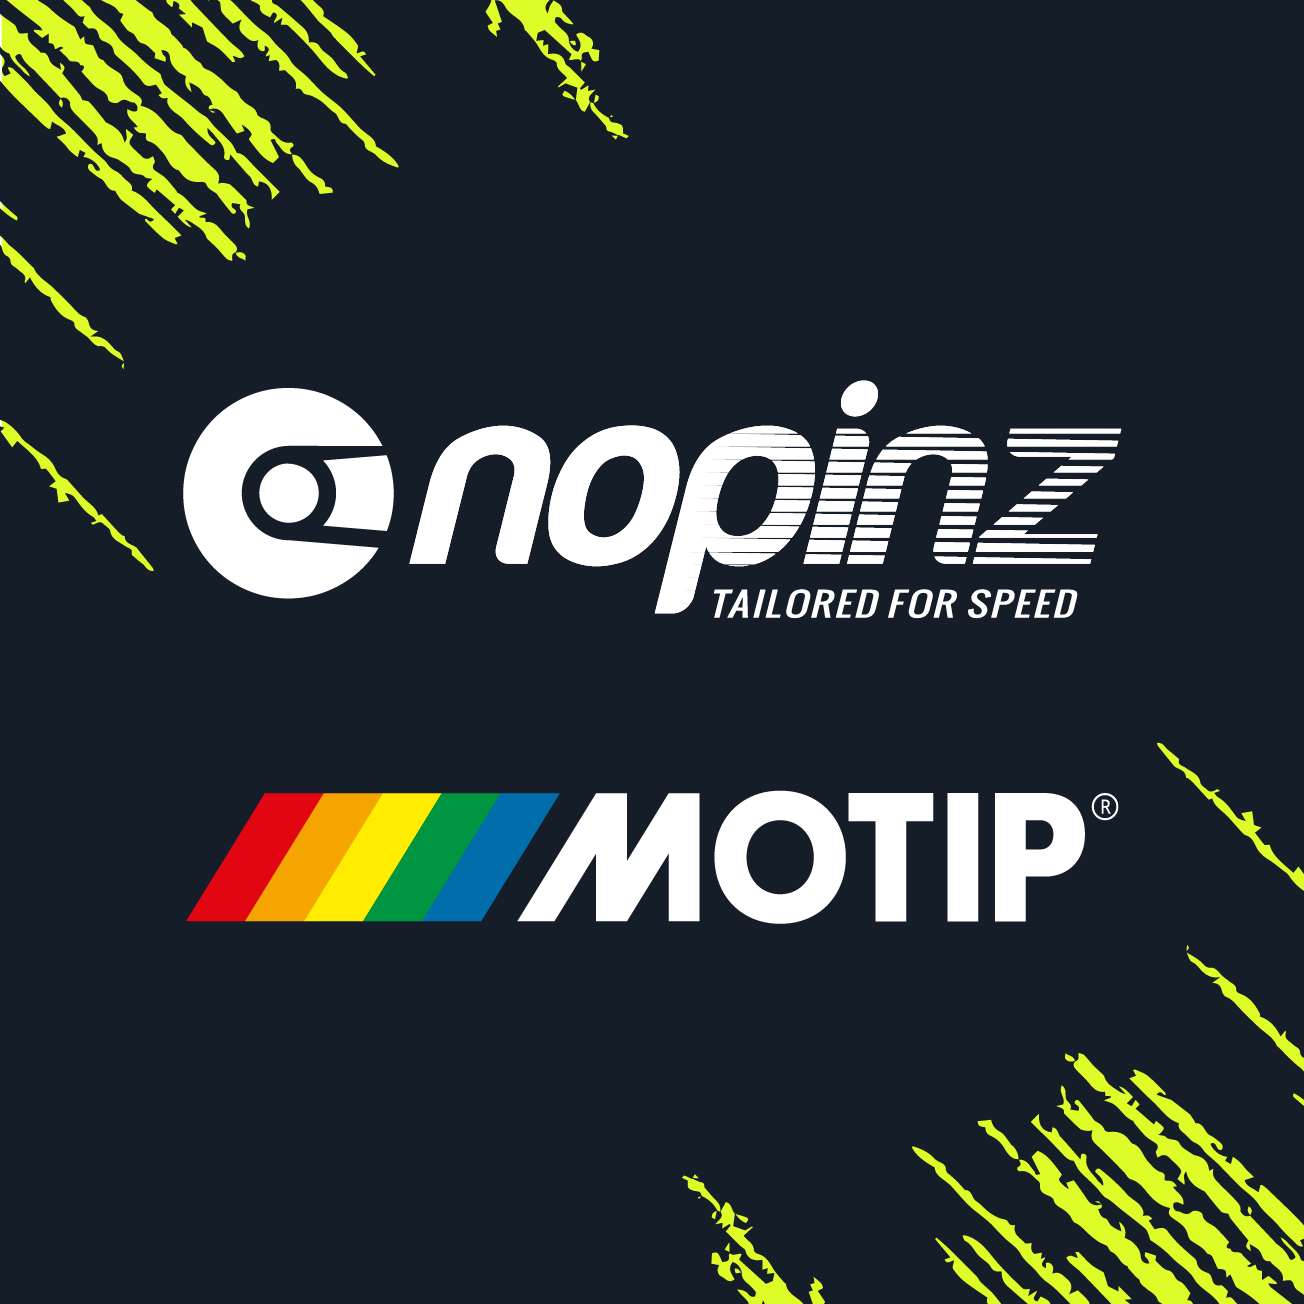 Club Image for NOPINZ MOTIP DEVELOPMENT TEAM